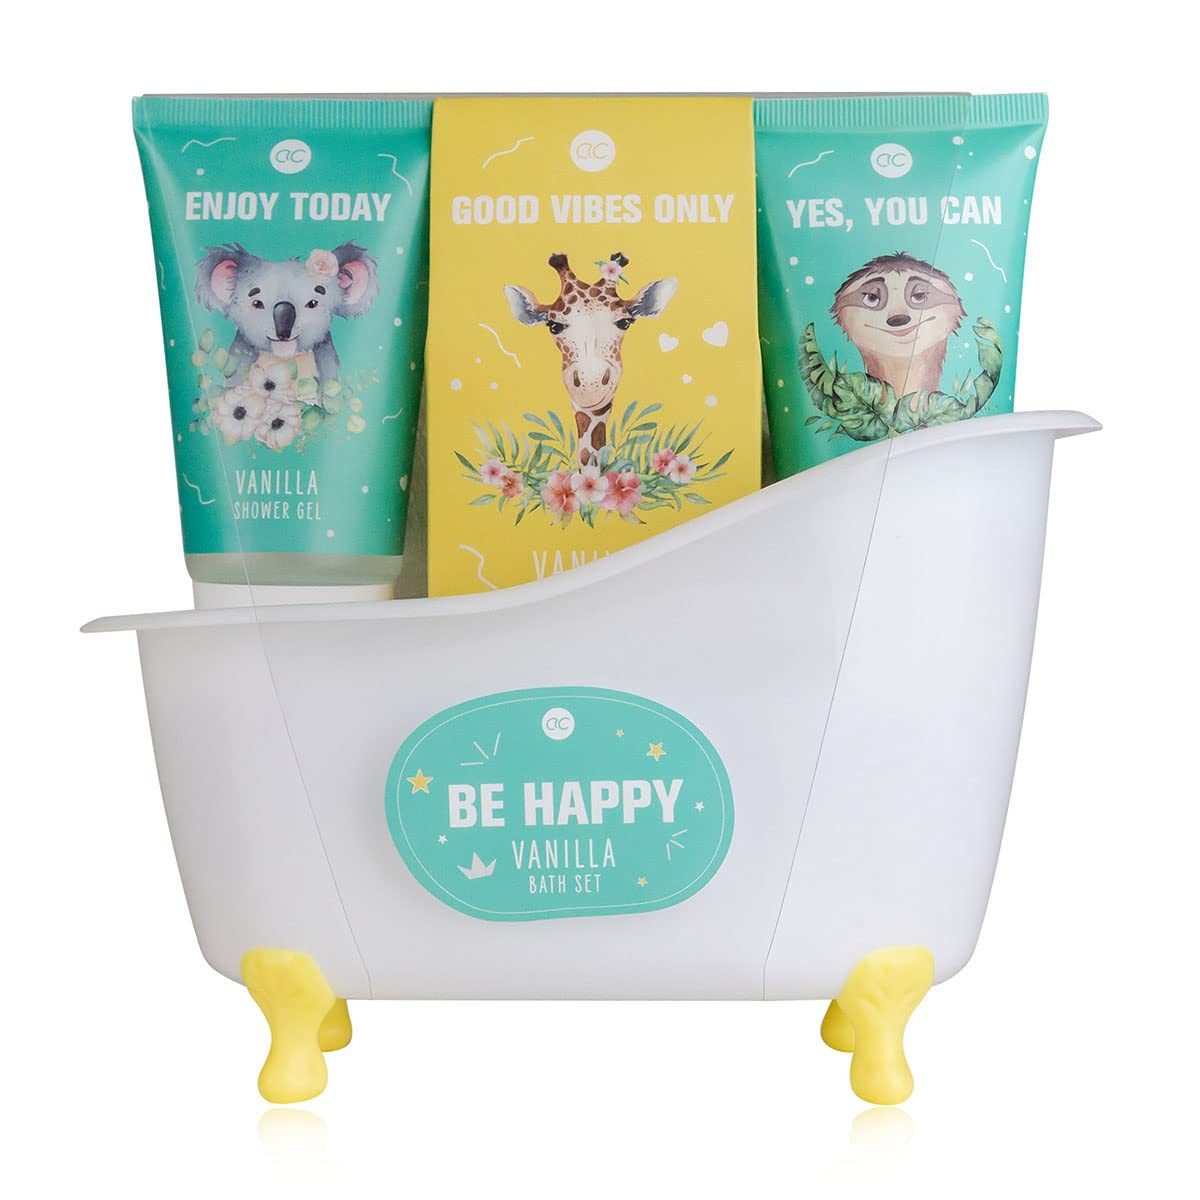 ACCENTRA Pflege-Geschenkbox Badeset "Be happy" Badewanne Geschenkset, 4-tlg., in einer Plastikbadewanne